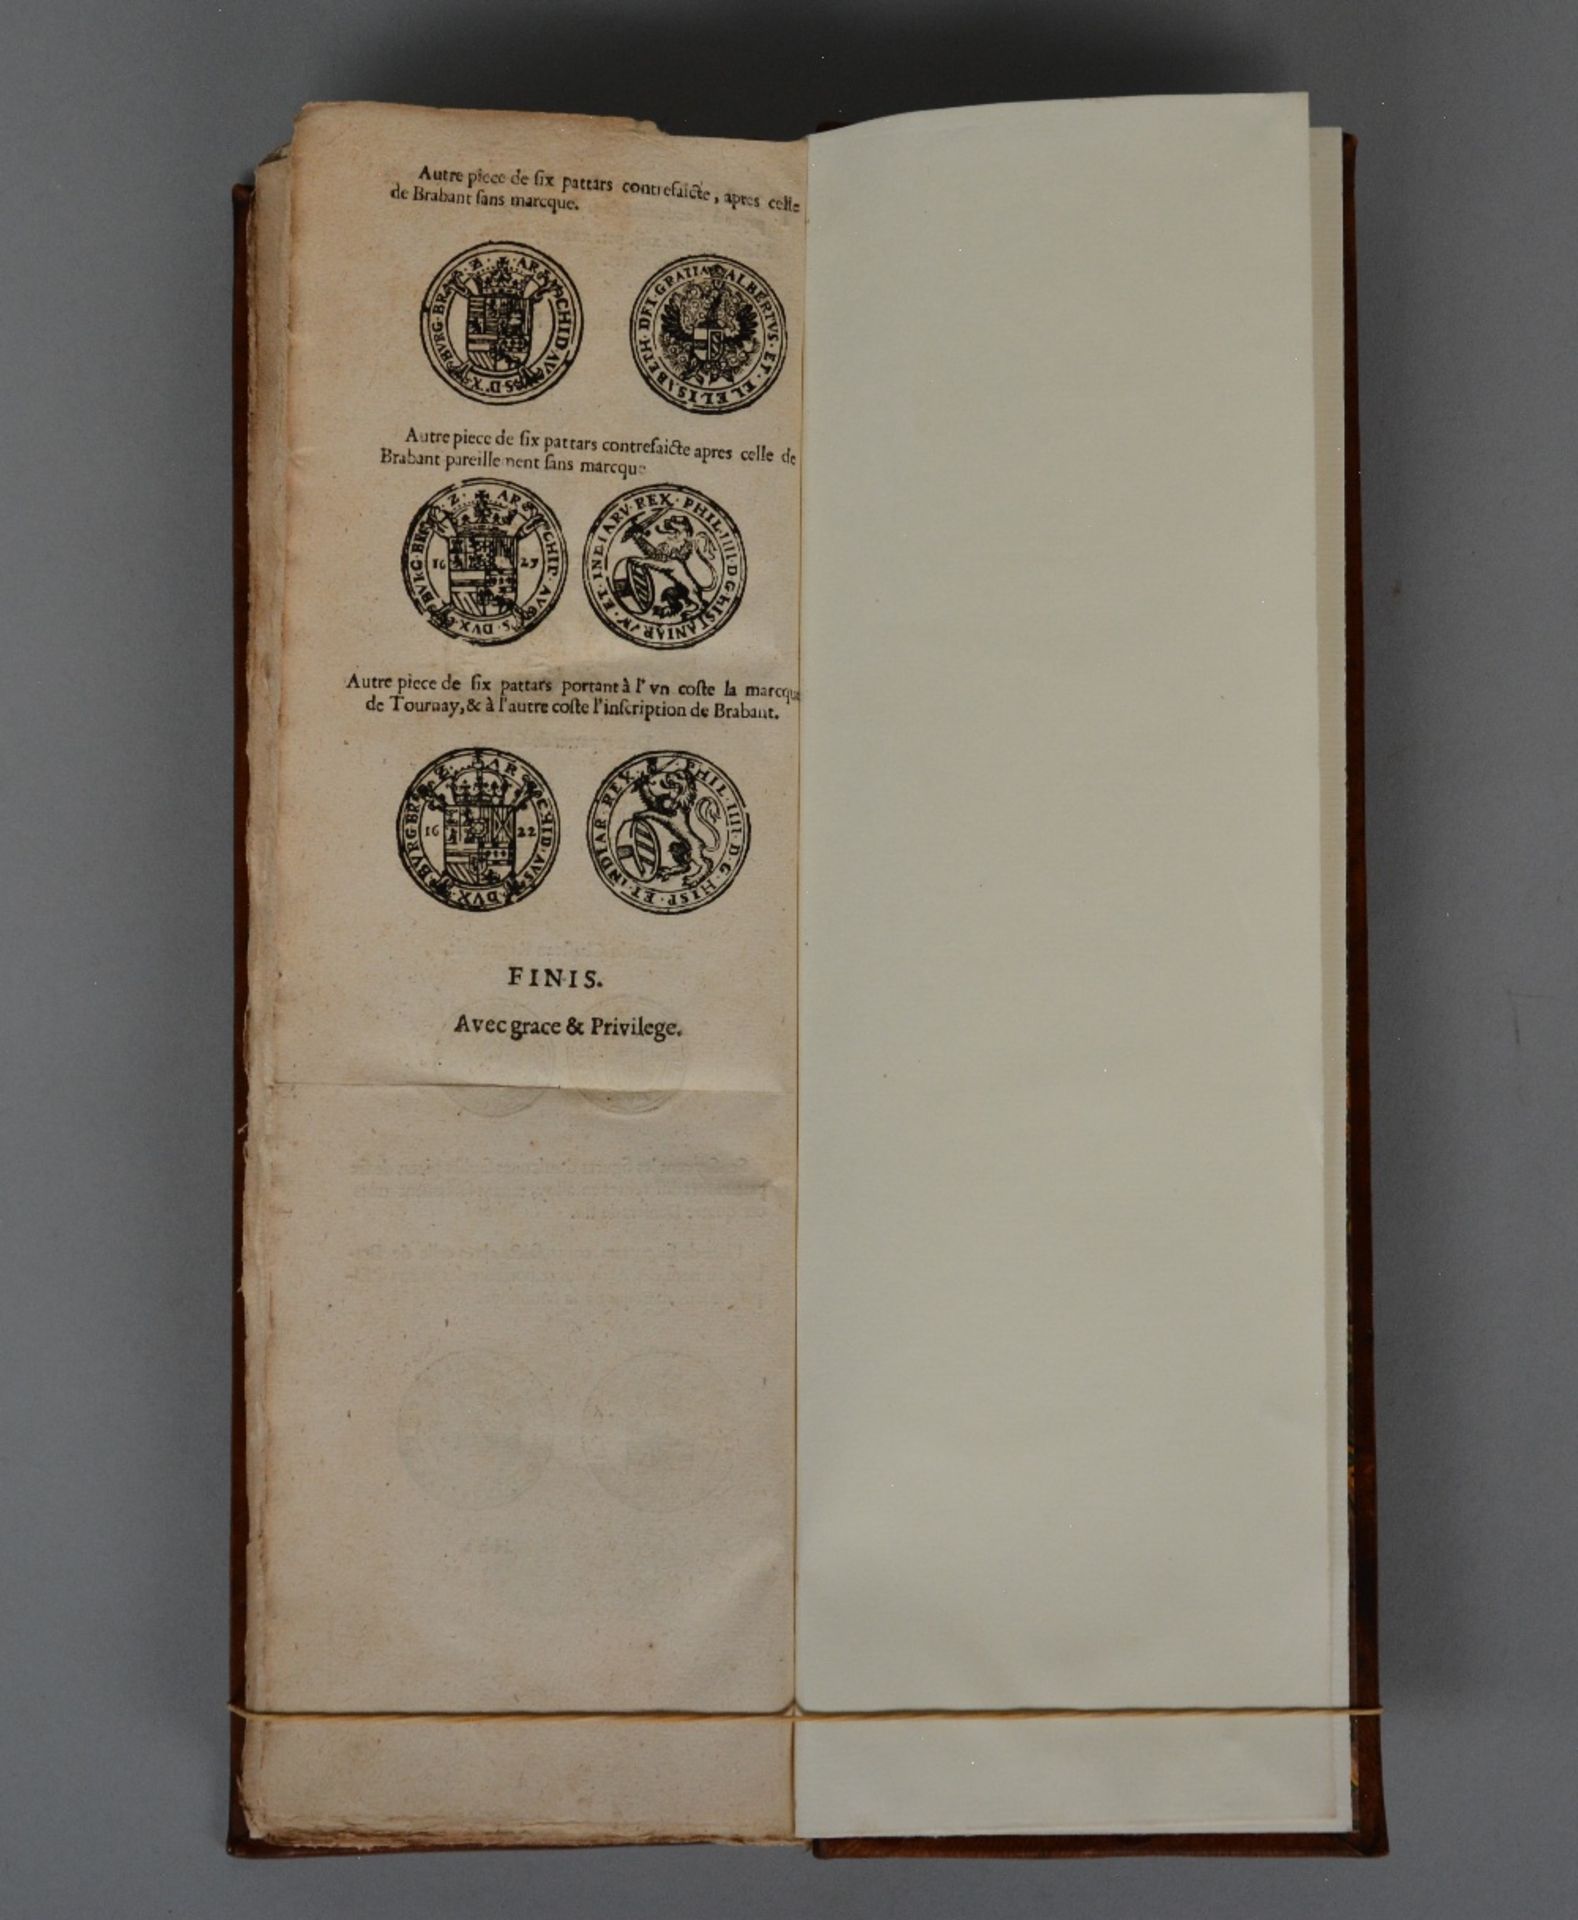 A 17thC stockbrokers handbook, ed. by 'H. Verdussen - Antwerp 1633', richly illustrated, 20thC - Bild 8 aus 8